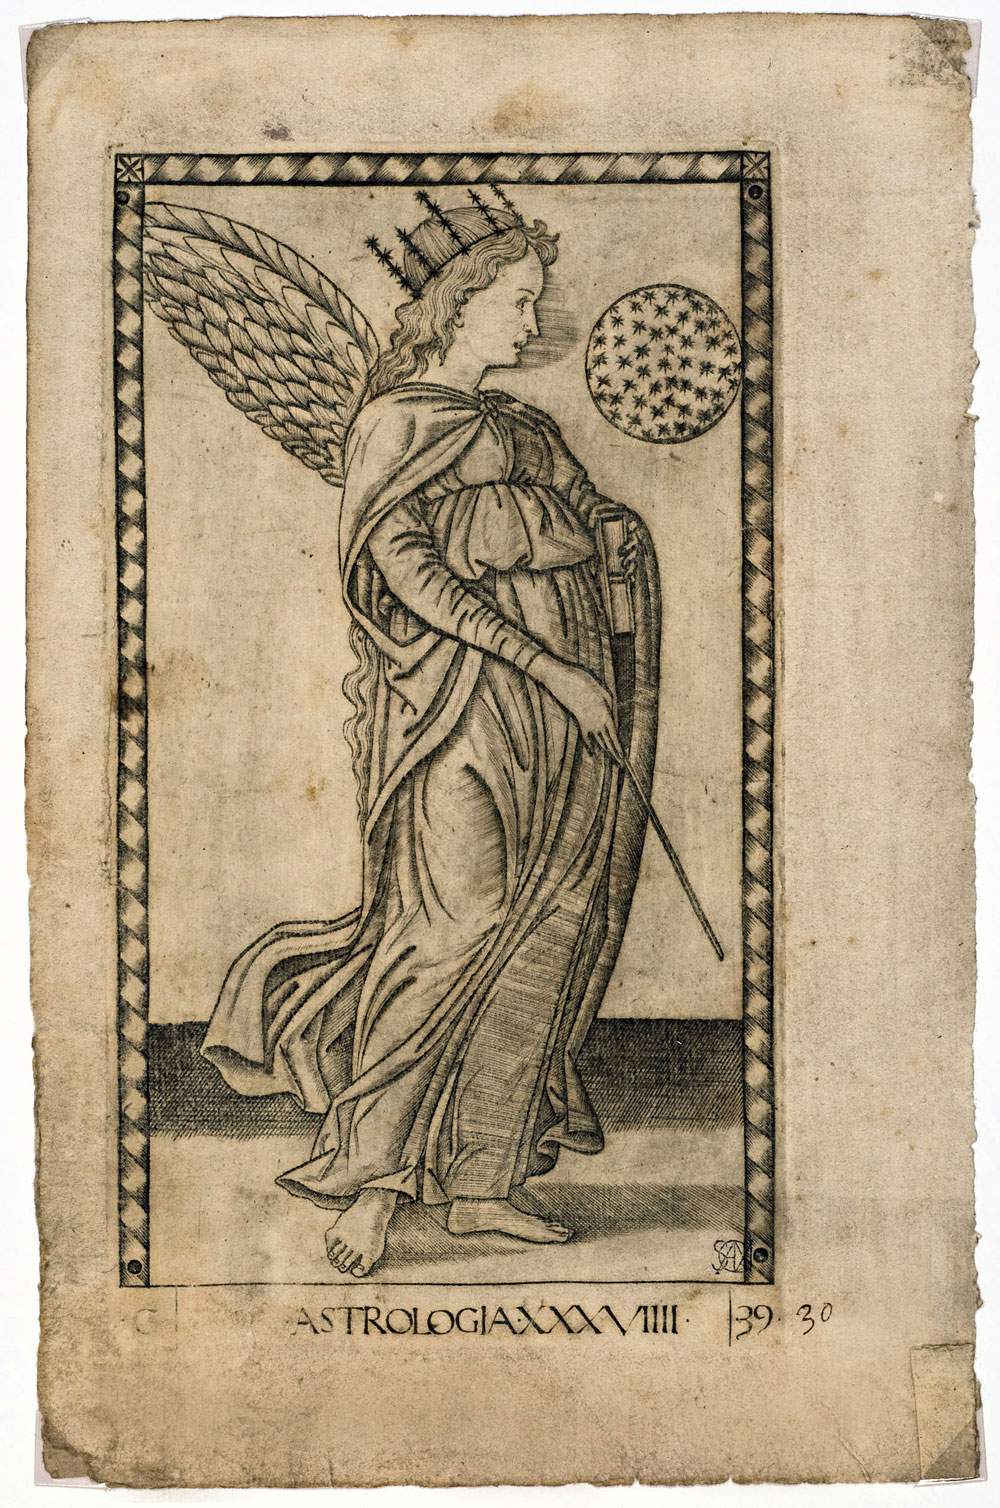 Les tarots de Mantegna exposés à la Veneranda Biblioteca Ambrosiana